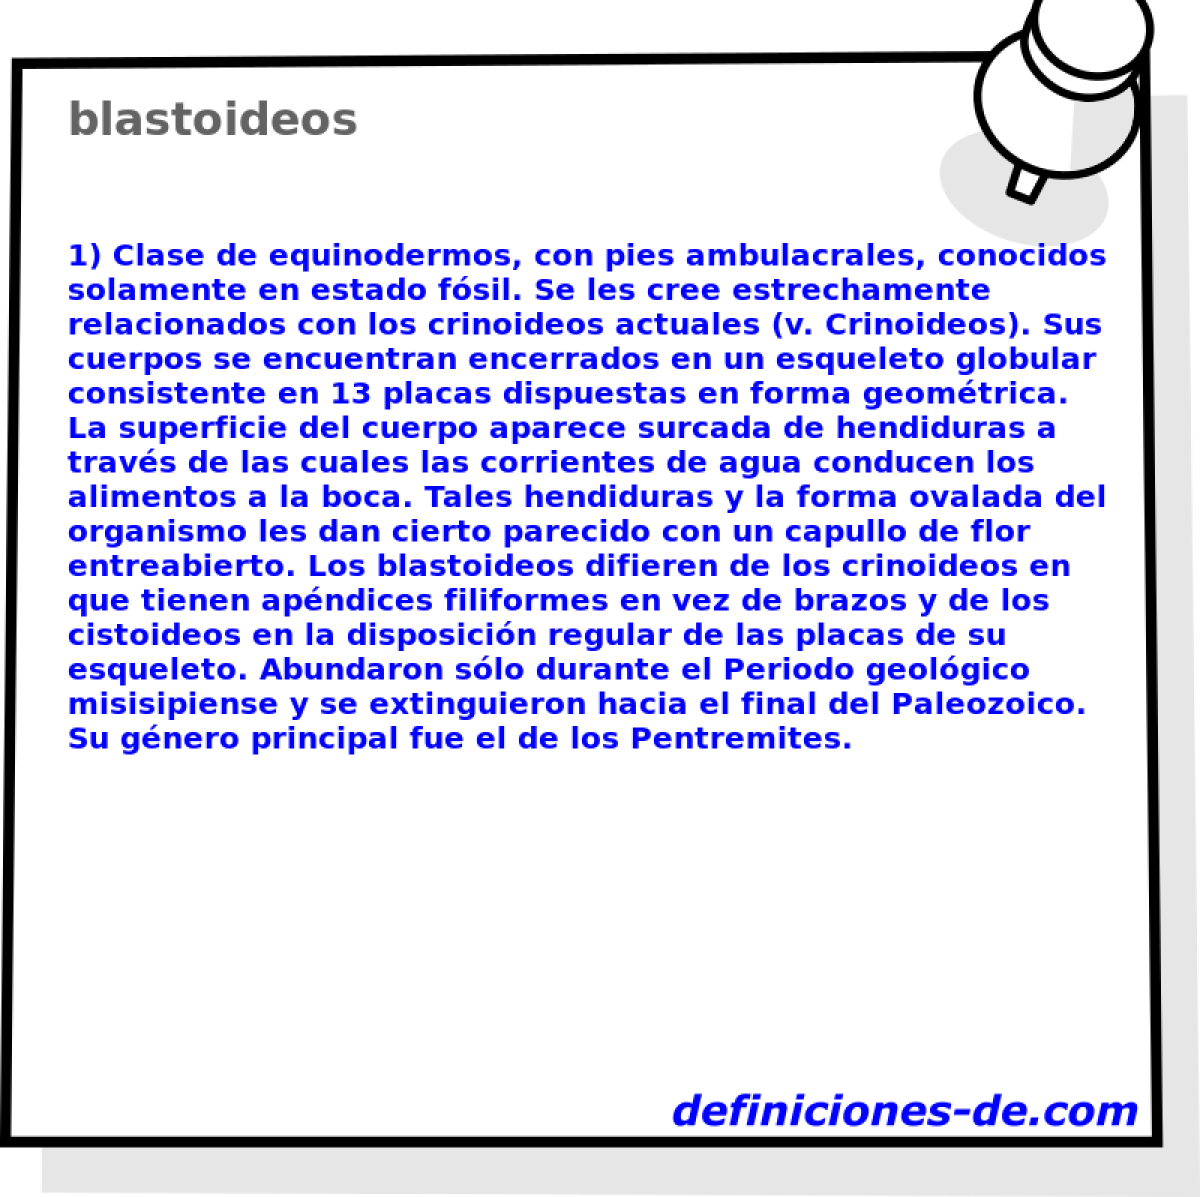 blastoideos 